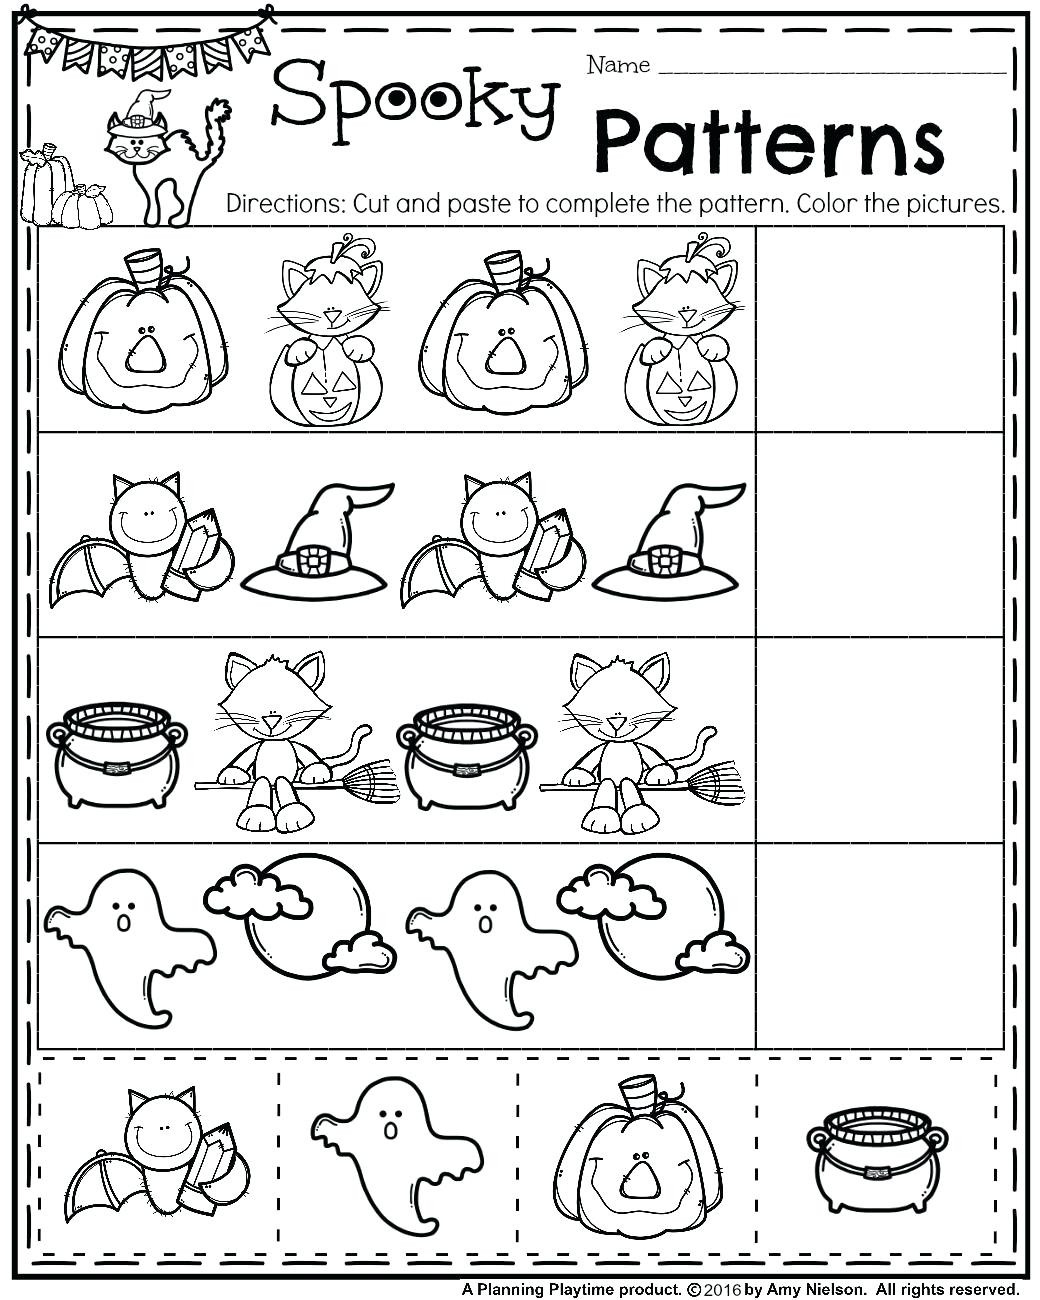 pre kindergarten worksheets